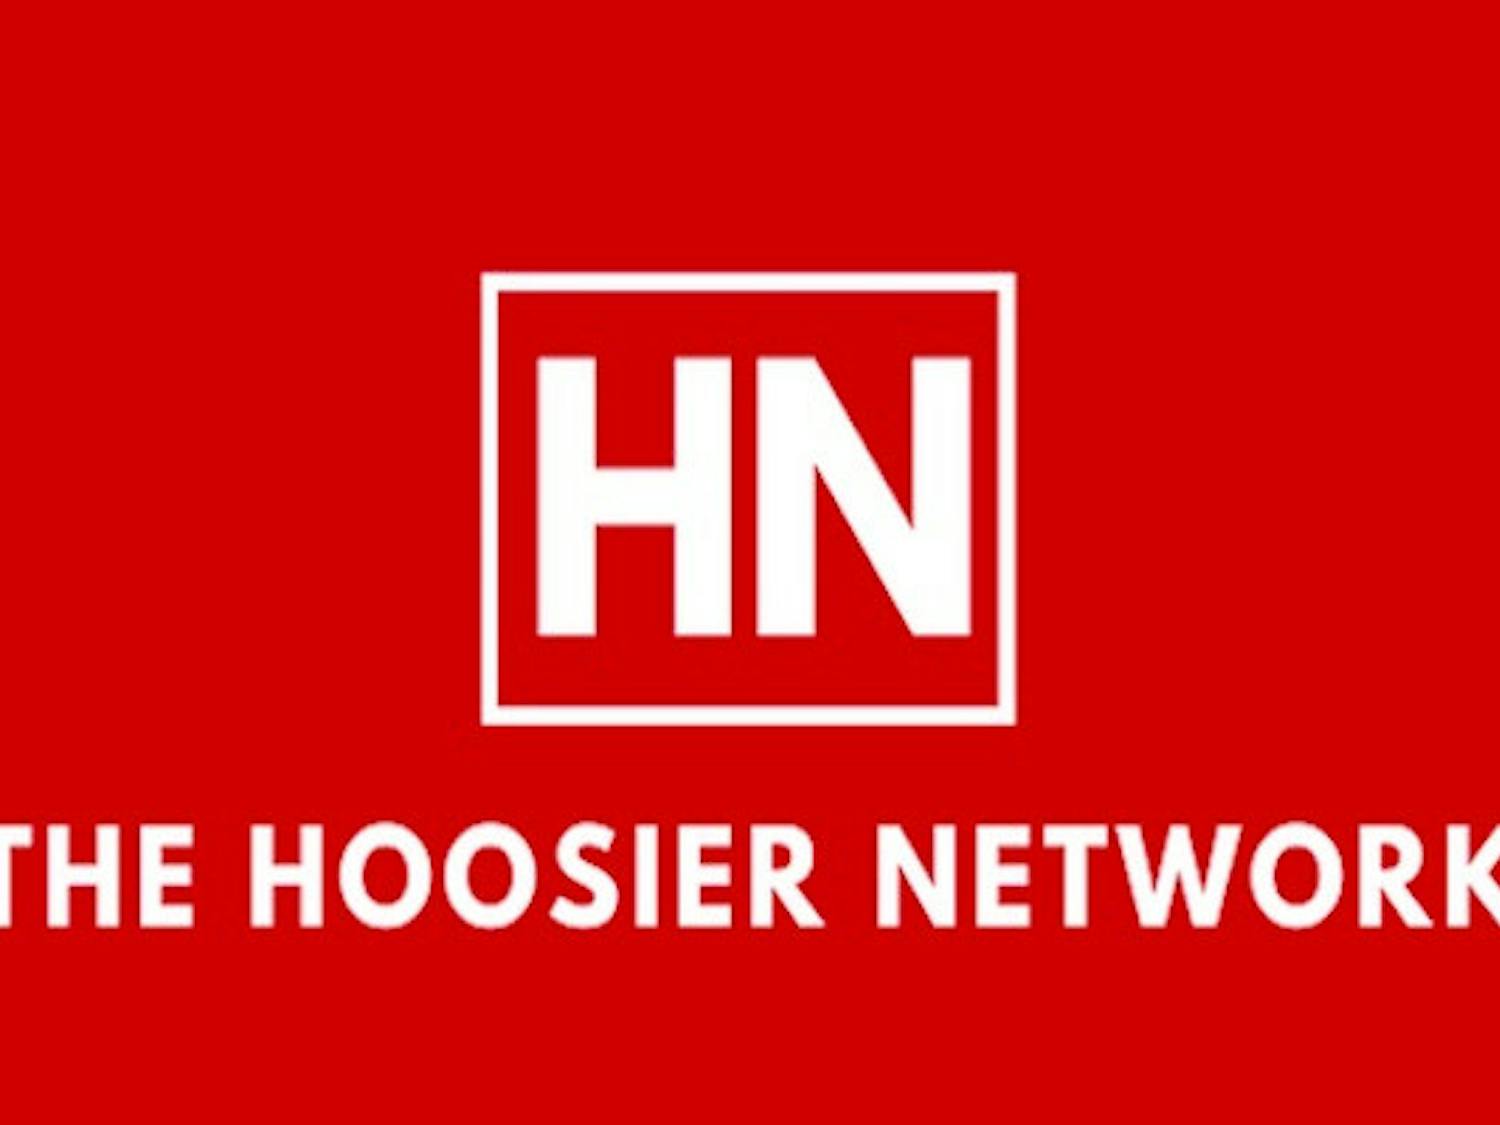 HN-Logo